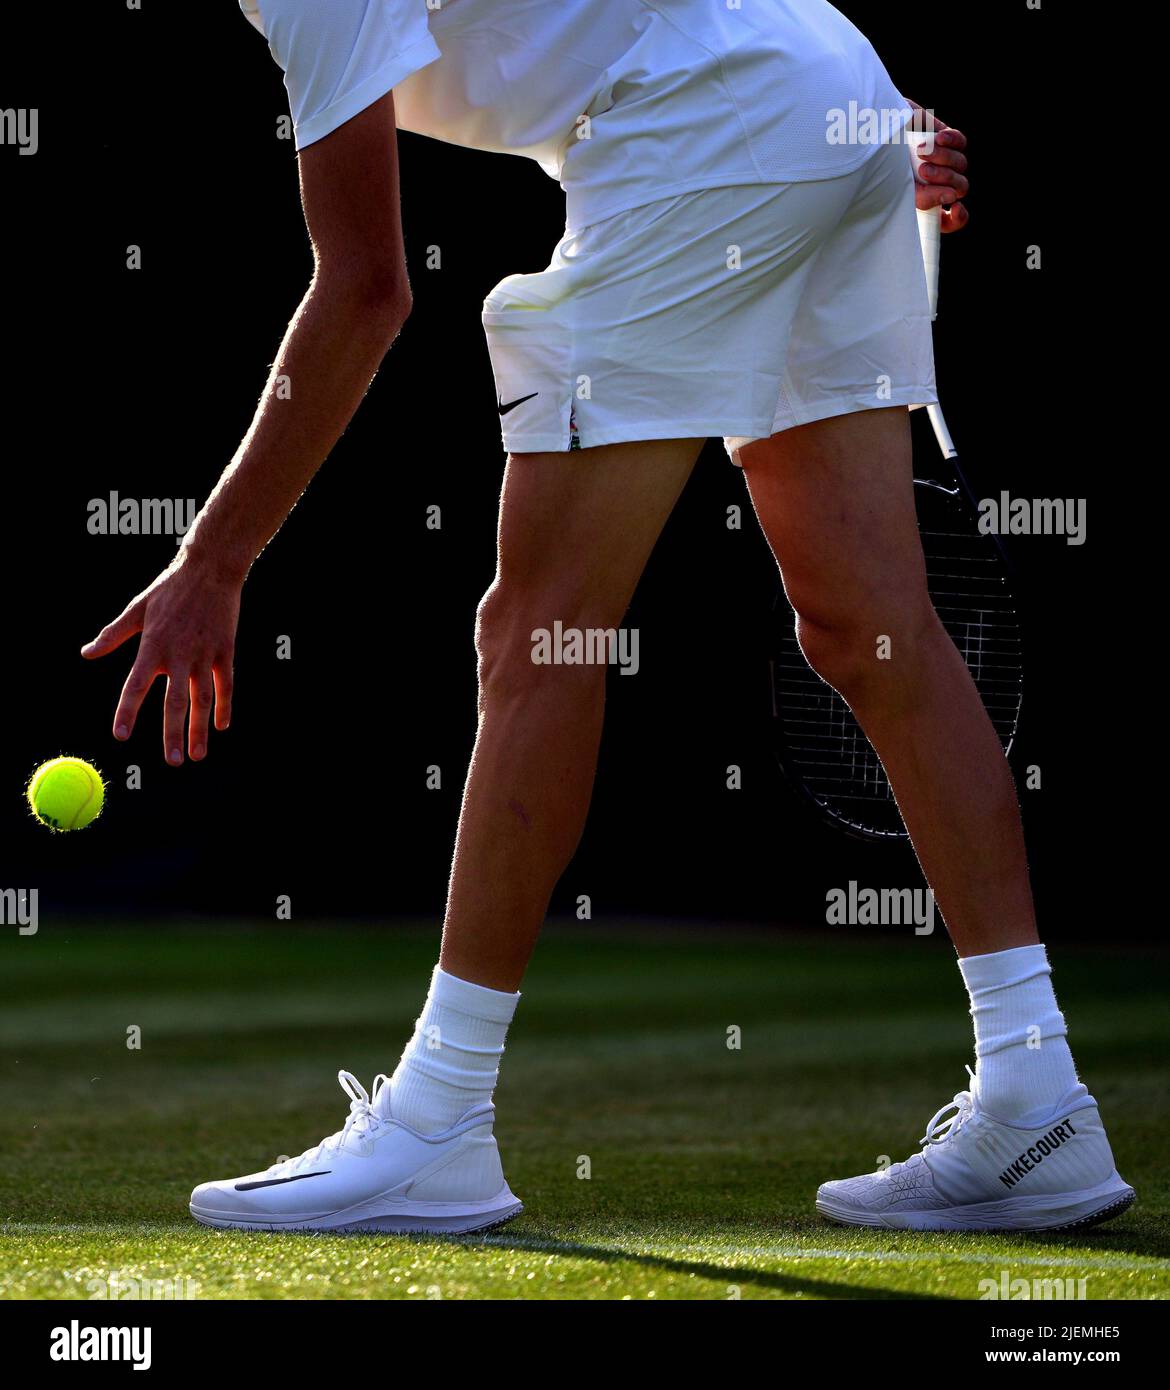 Jannik Sinner in azione contro Stan Wawrinka il giorno uno dei 2022 Wimbledon Championships all'All England Lawn Tennis and Croquet Club, Wimbledon. Data foto: Lunedì 27 giugno 2022. Foto Stock